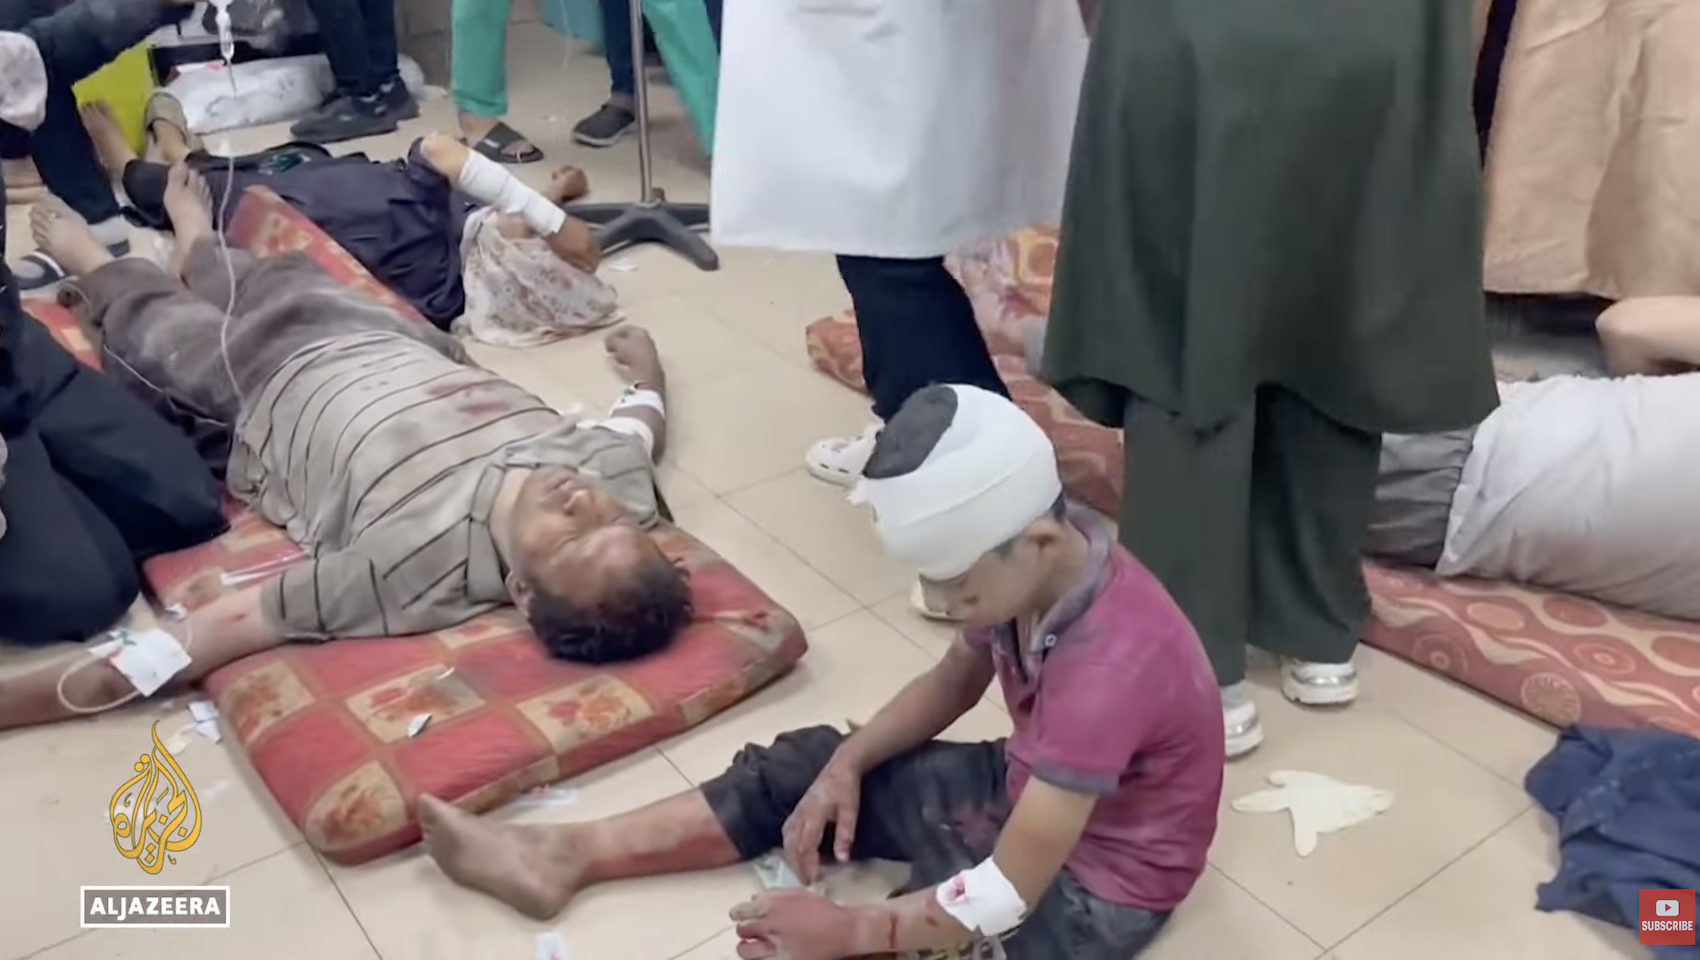 影片顯示，幾名傷患在醫院地板上接受治療，這在加薩醫療系統超負荷的醫院已是常態。圖/翻攝自Al Jazeera English YouTube頻道